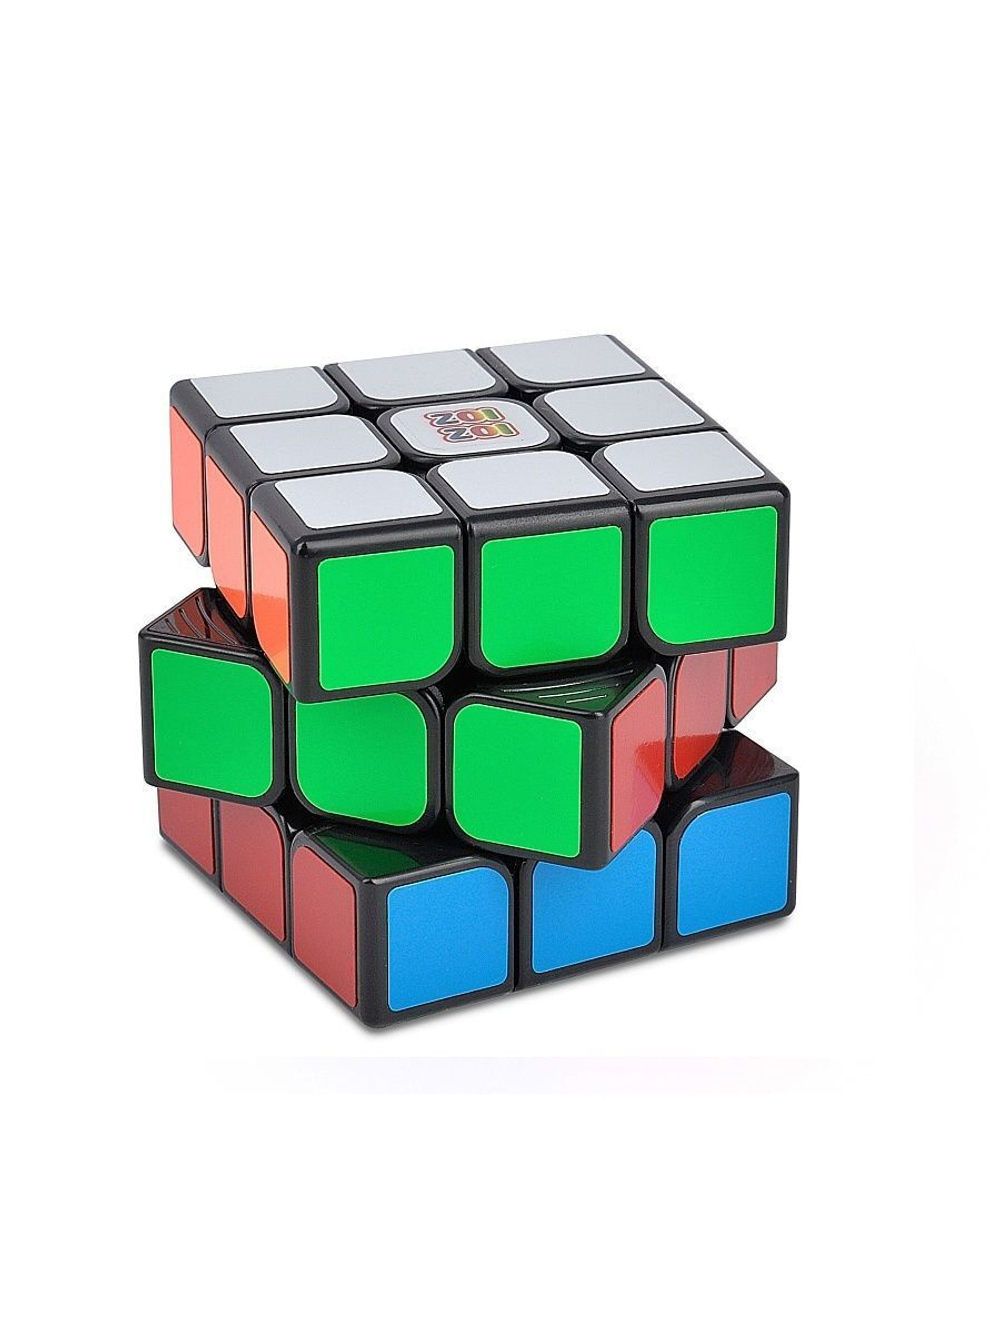 Игрушка Куб 3x3 черный с цветными наклейками, скоростной, с подставкой и инструкцией по сборке.